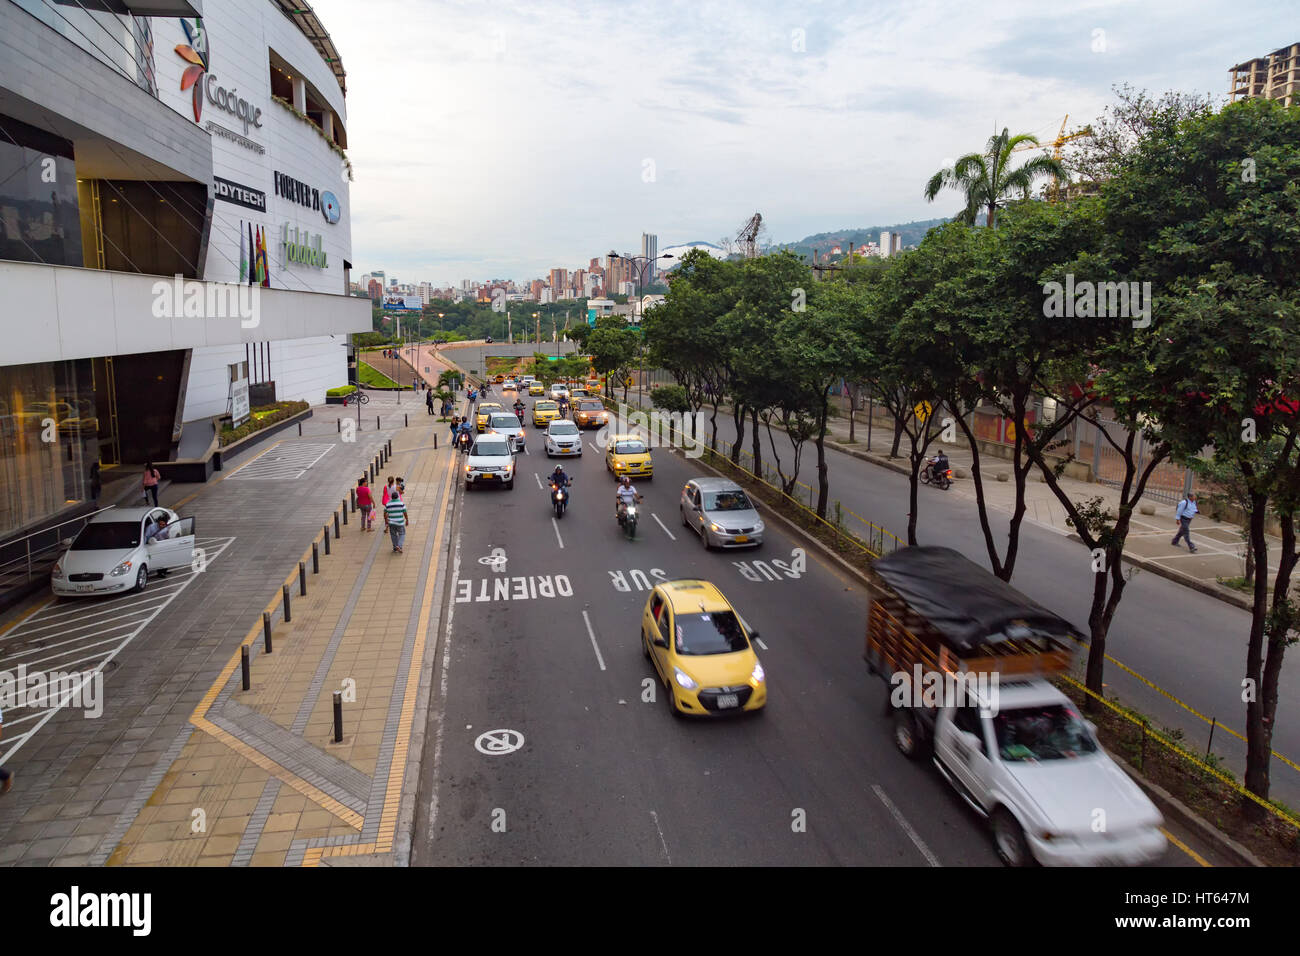 BUCARAMANGA, COLOMBIA - 2 de mayo: el tráfico pasa el Centro Comercial Cacique el 2 de mayo de 2016 en la ciudad de Bucaramanga, Colombia. Foto de stock